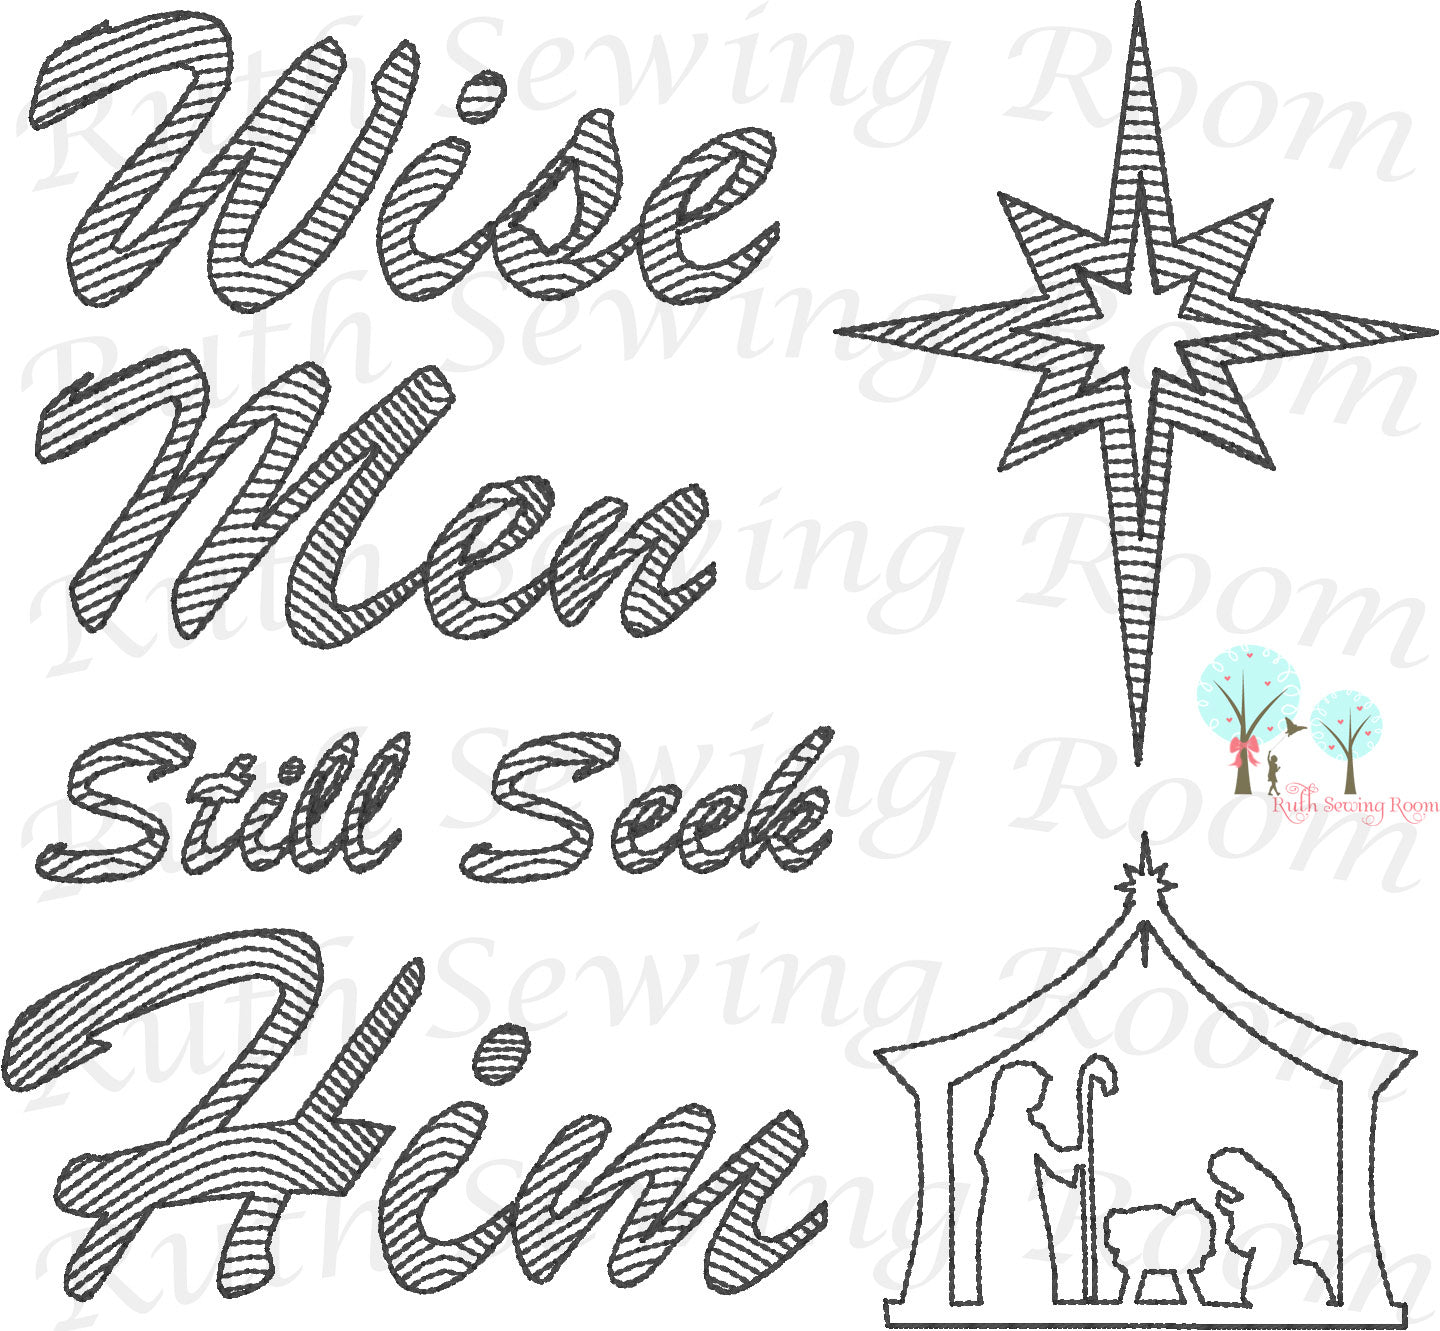 Wise Men Still Seek Him - Christmas Vintage Stitch